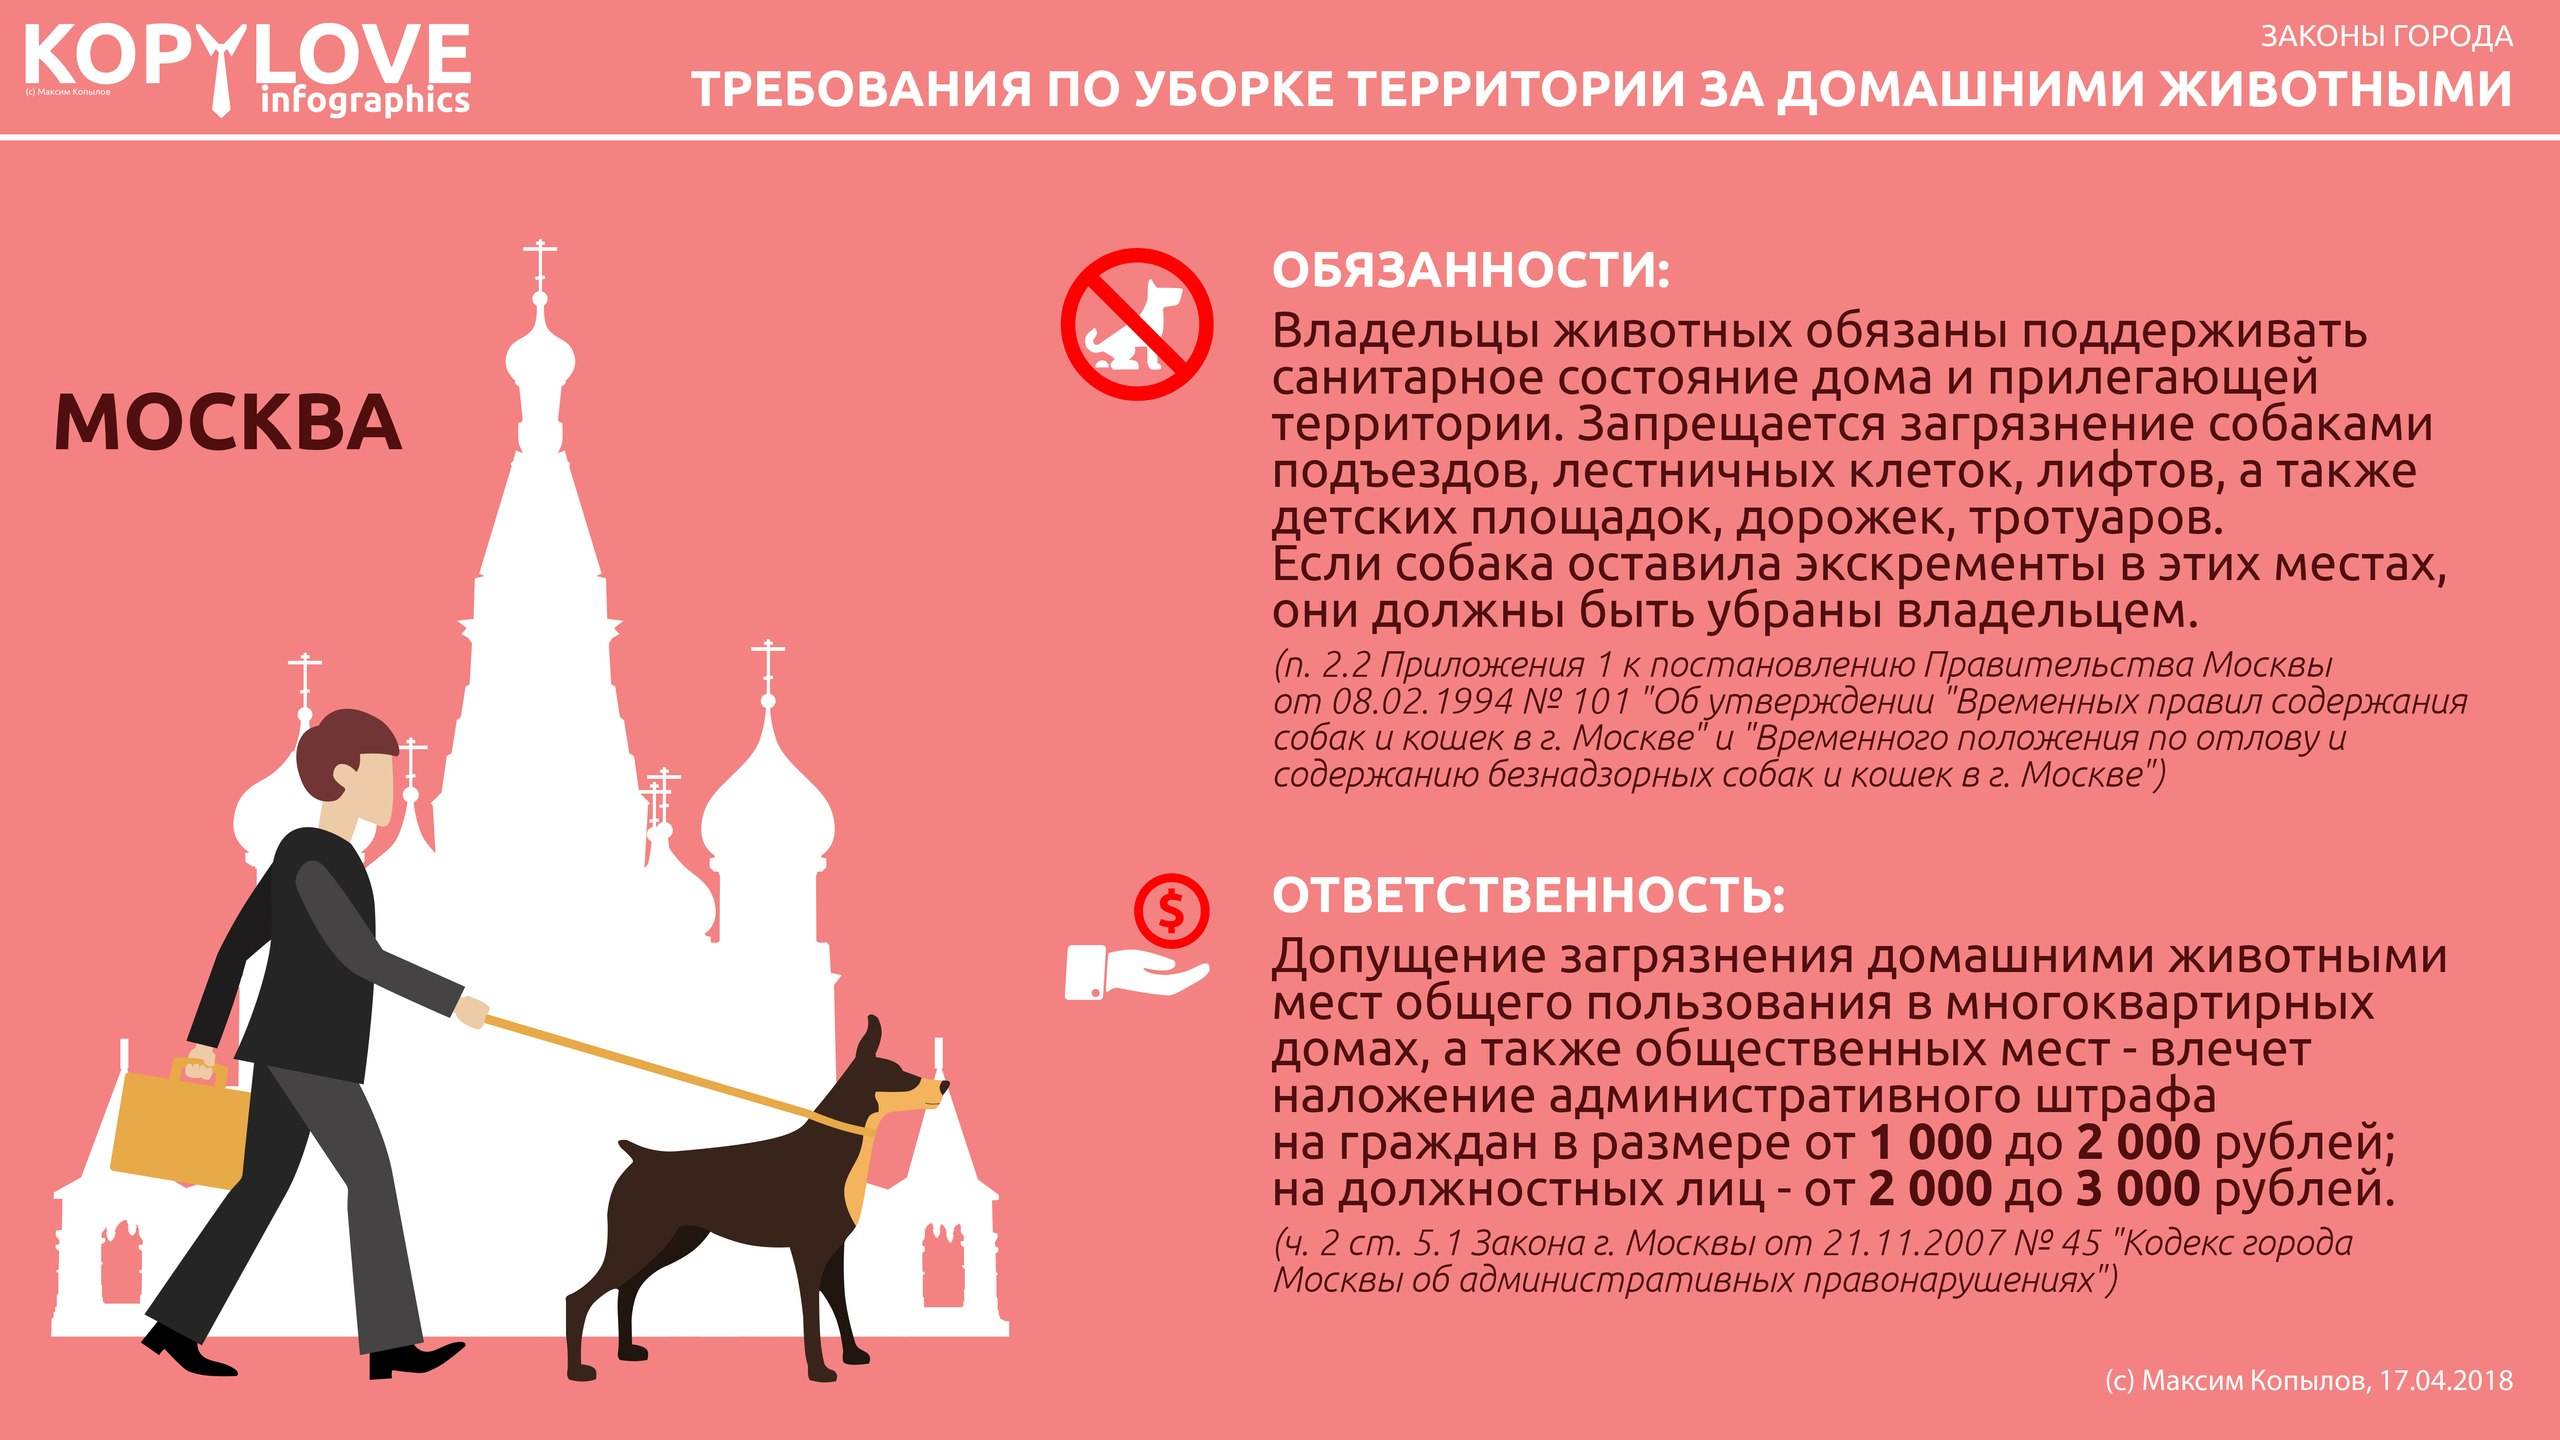 Обзор законов, правил, запретов и штрафов по выгулу и содержанию собак